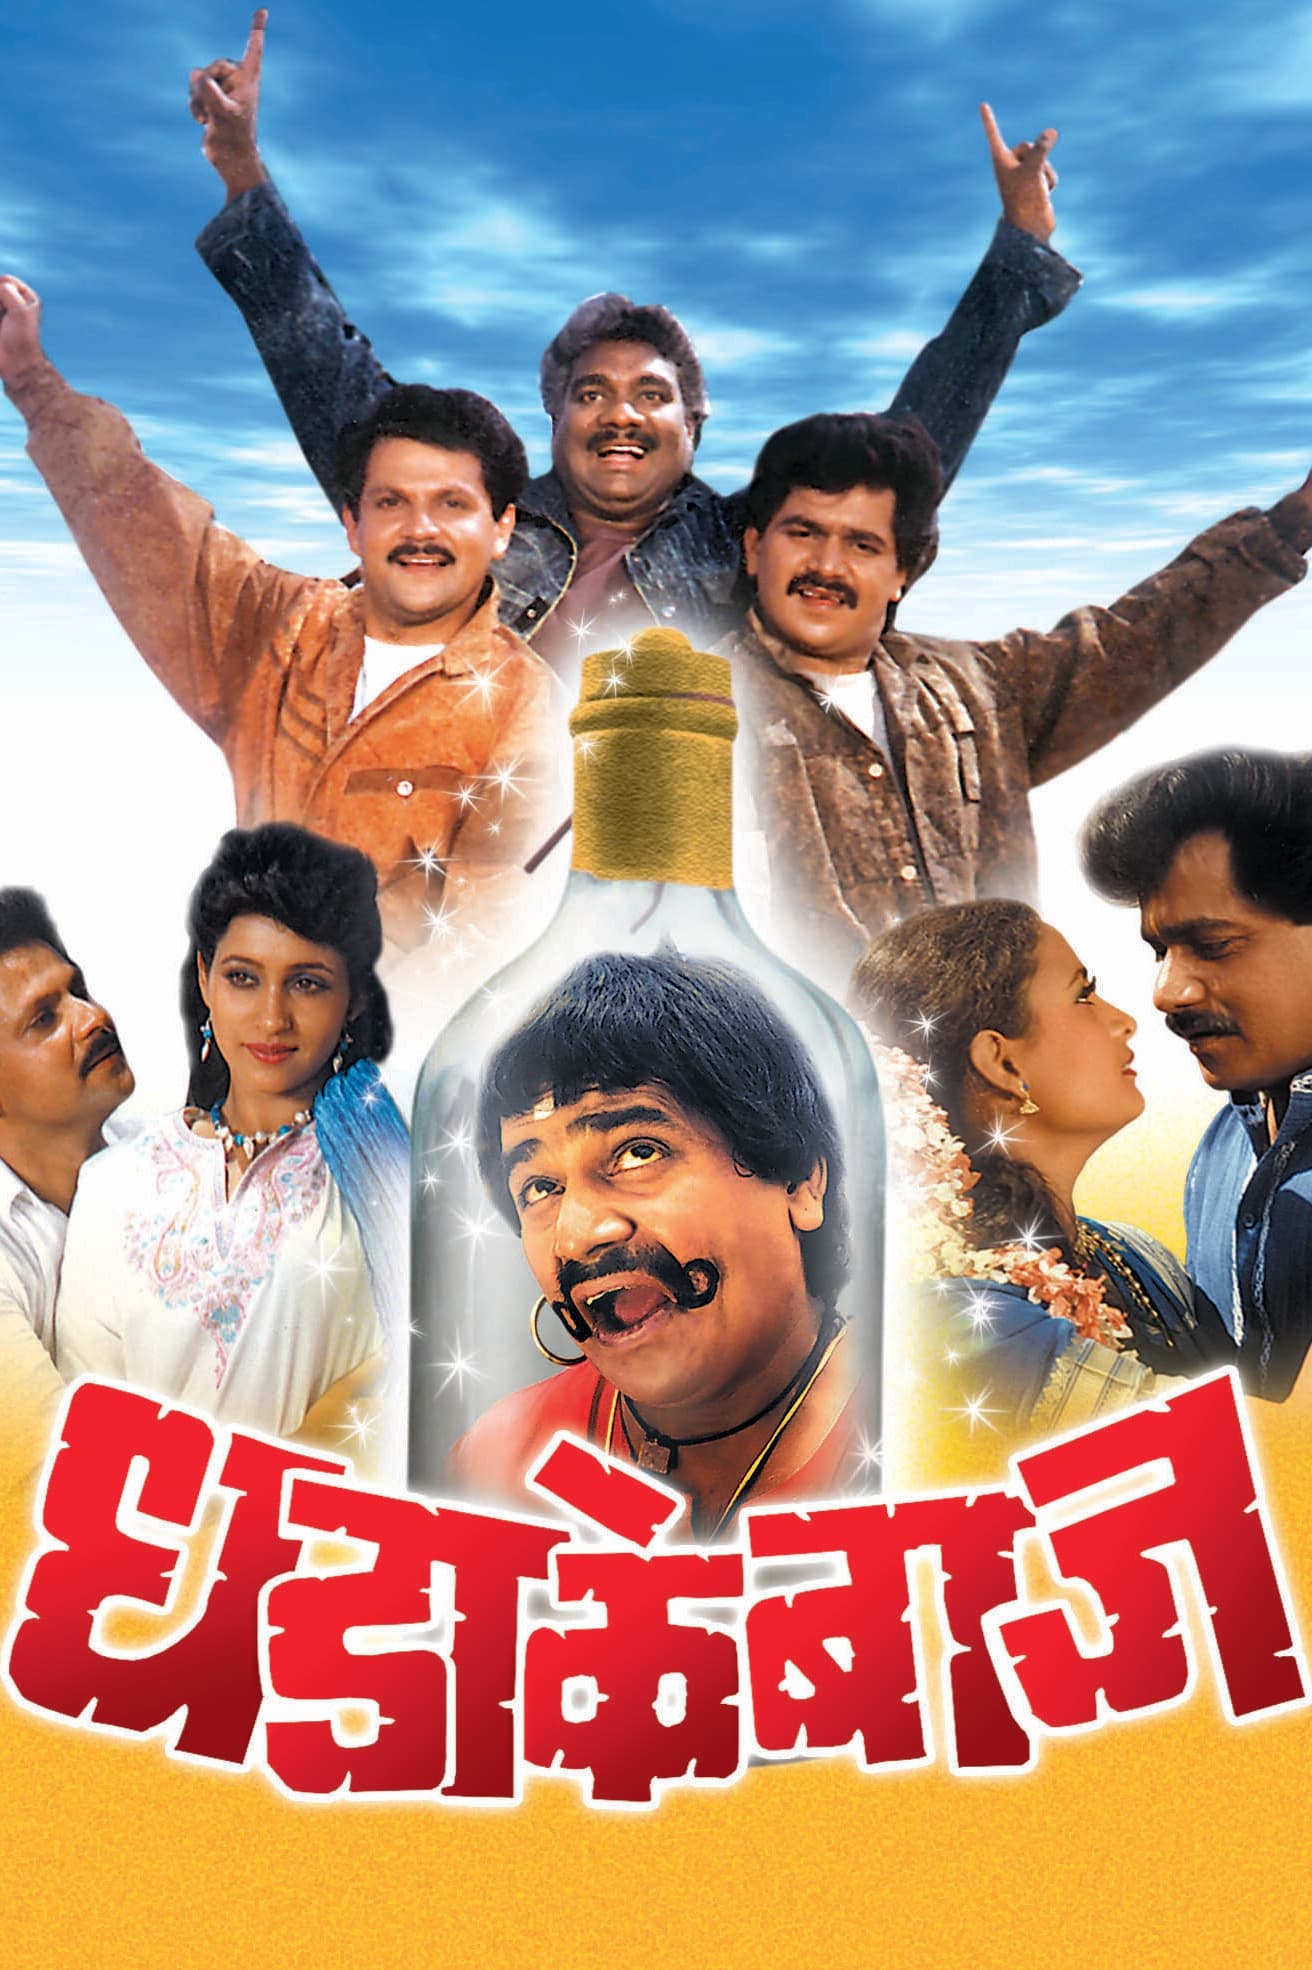 Dhadakebaaz marathi full movie